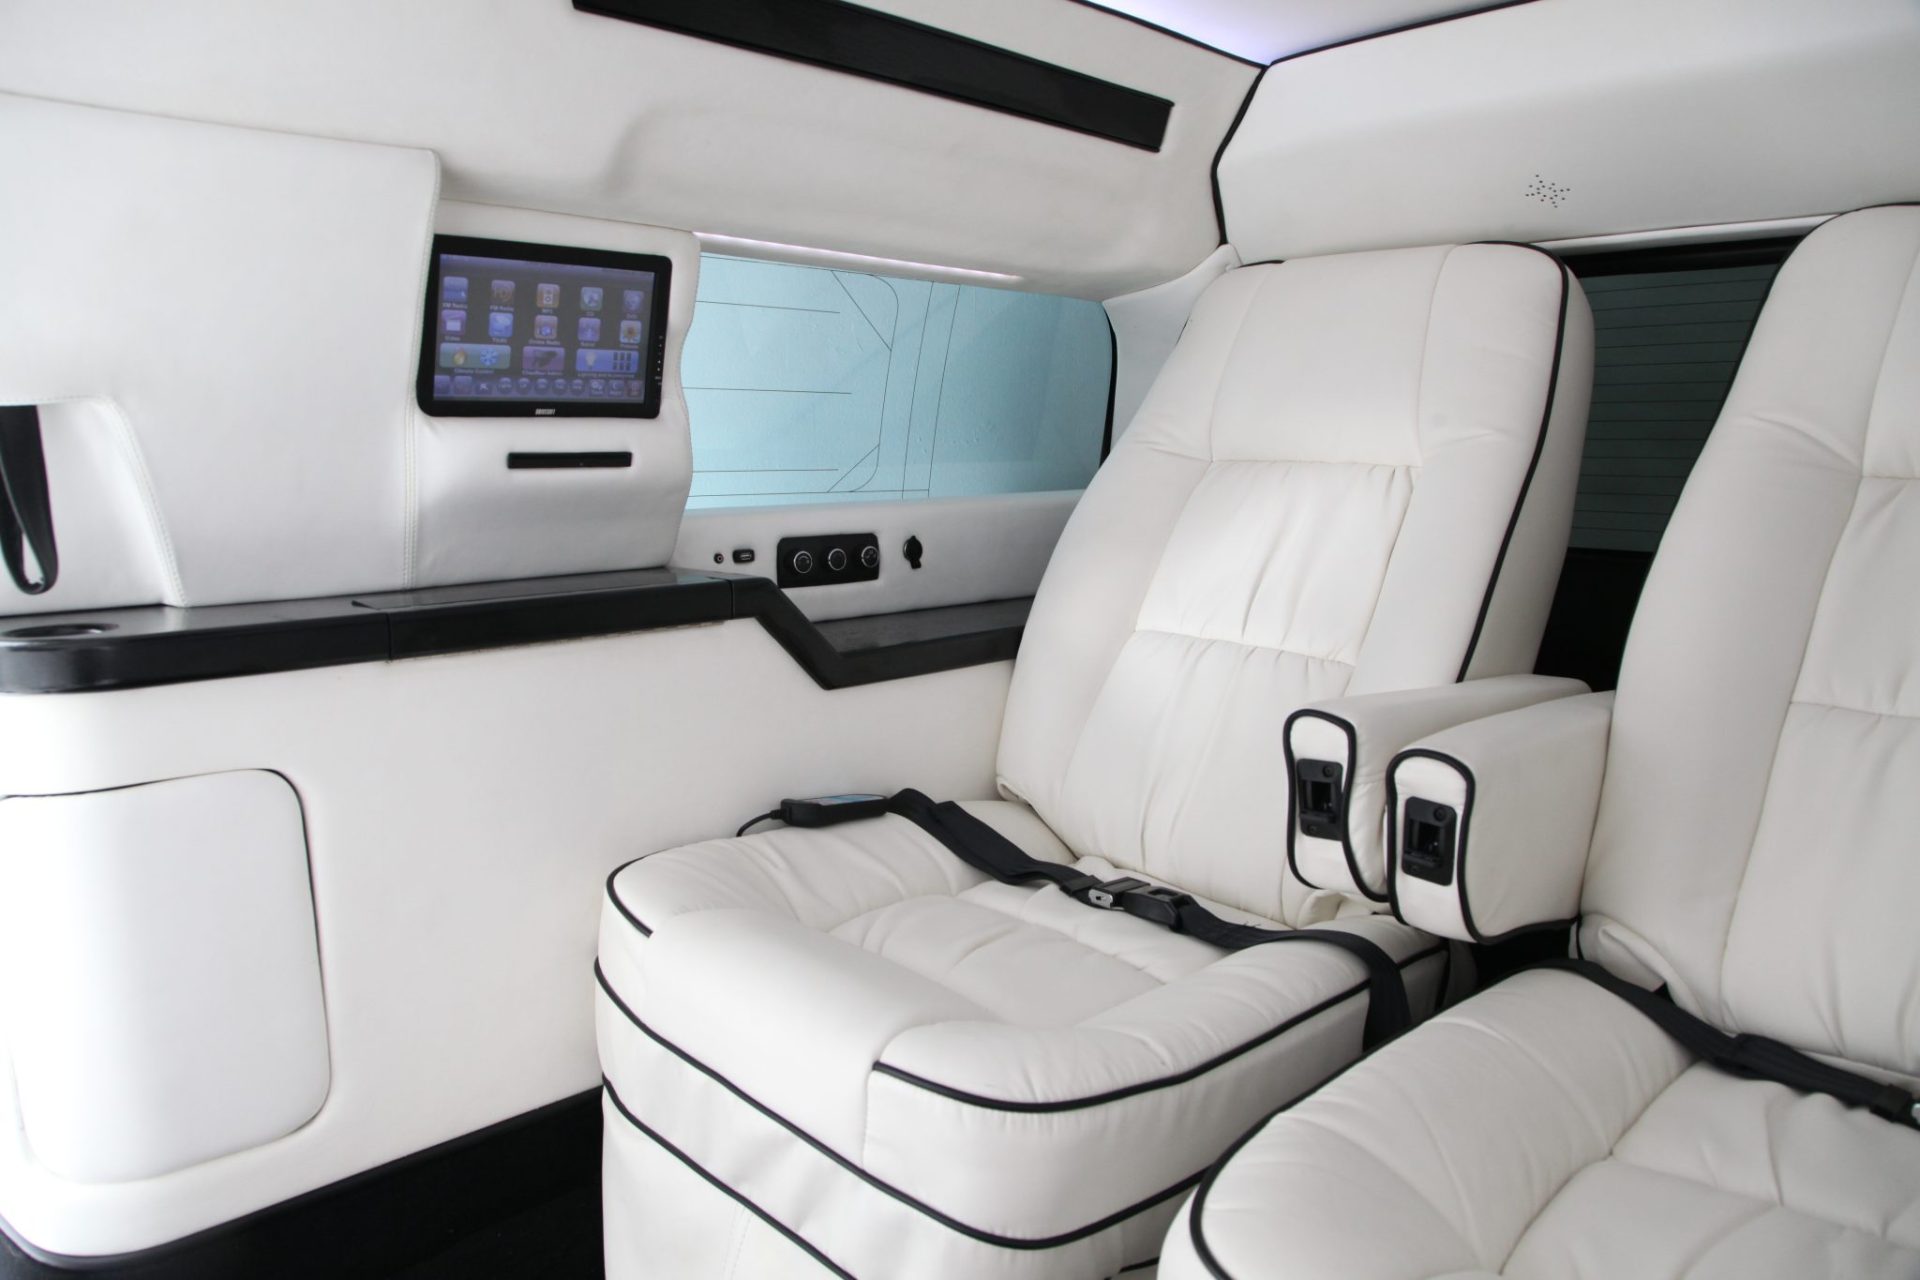 Asanti CEO Mobile Office Limousine - Interior Photo #5